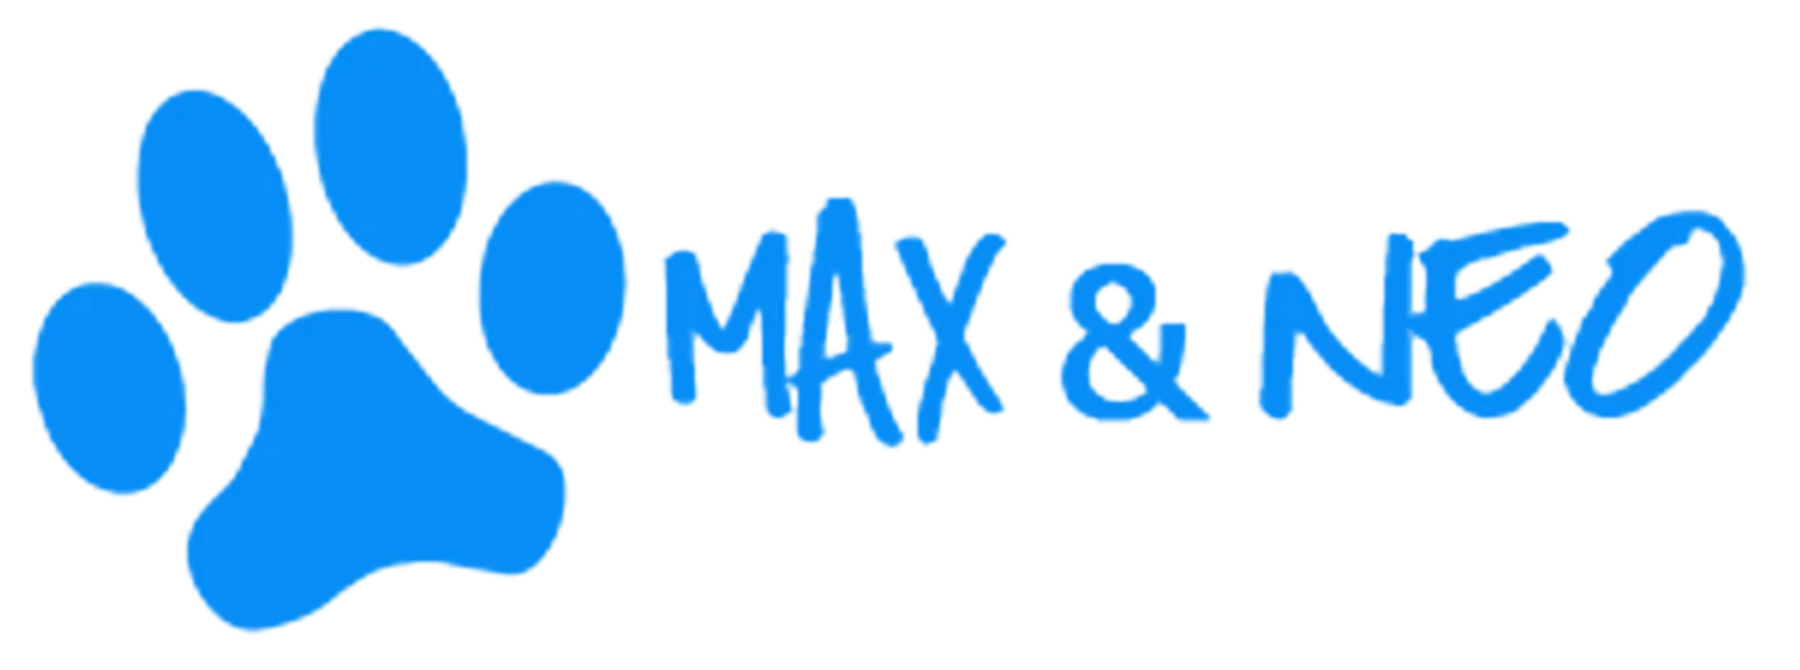 Max & Neo logo